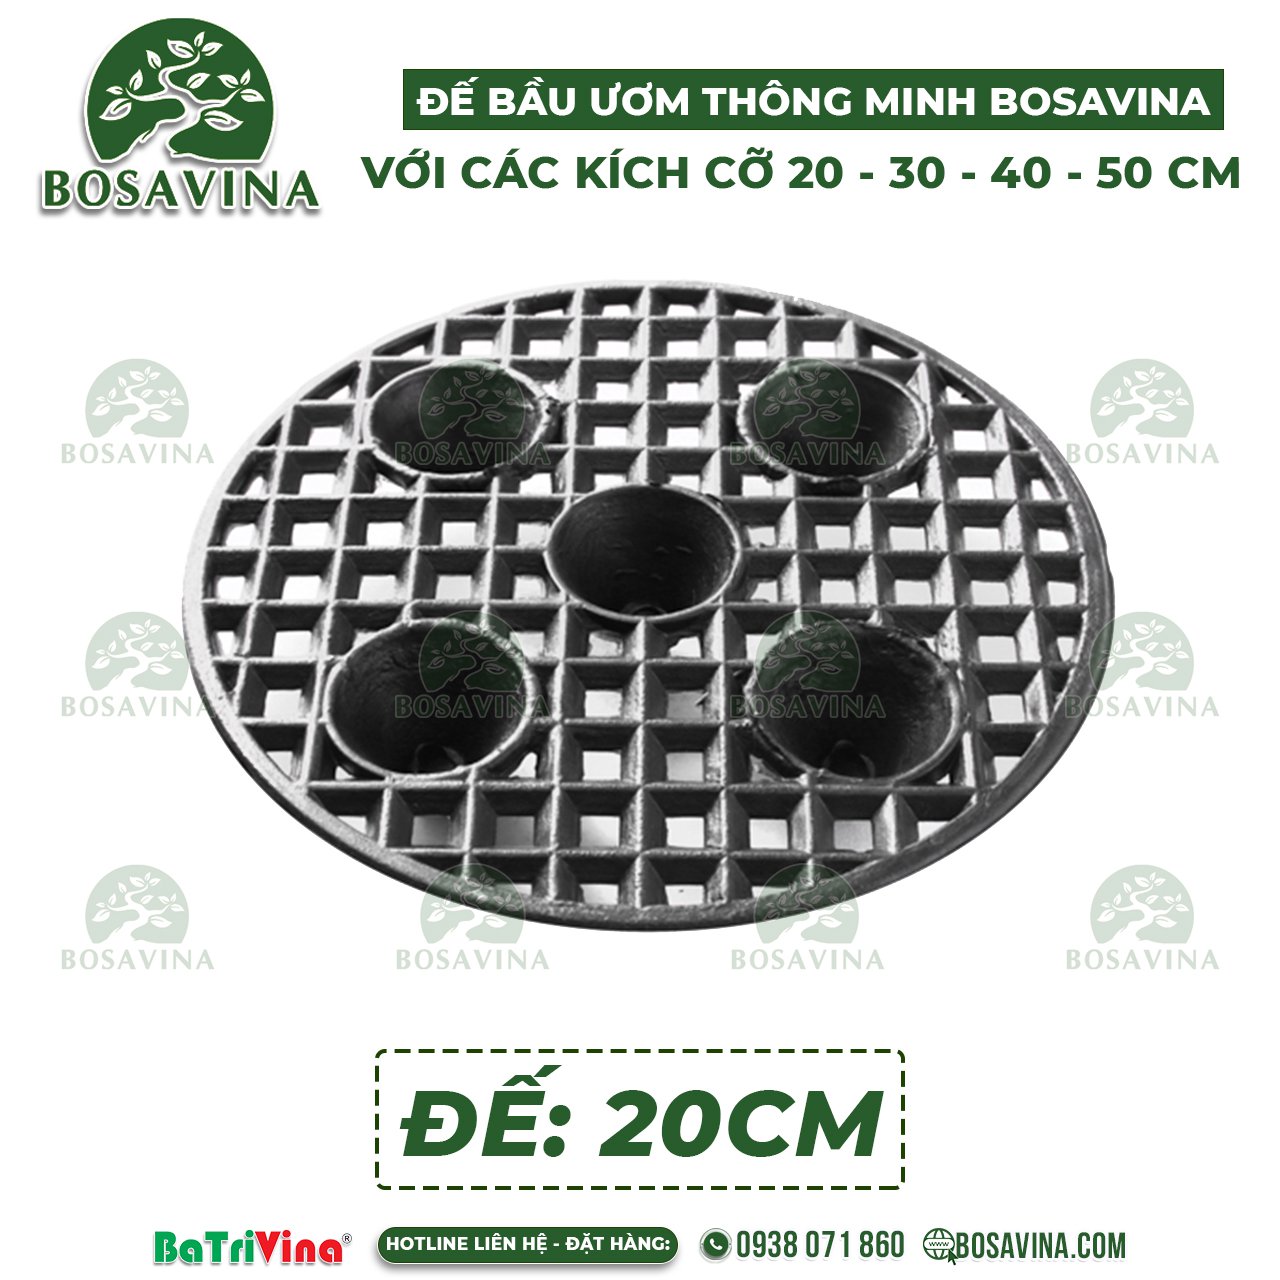 Đế Bầu Ươm Thông Minh - Bầu Nhựa Dưỡng Cây BoSaVina - Có các cỡ 20 - 30 - 40 - 50 cm